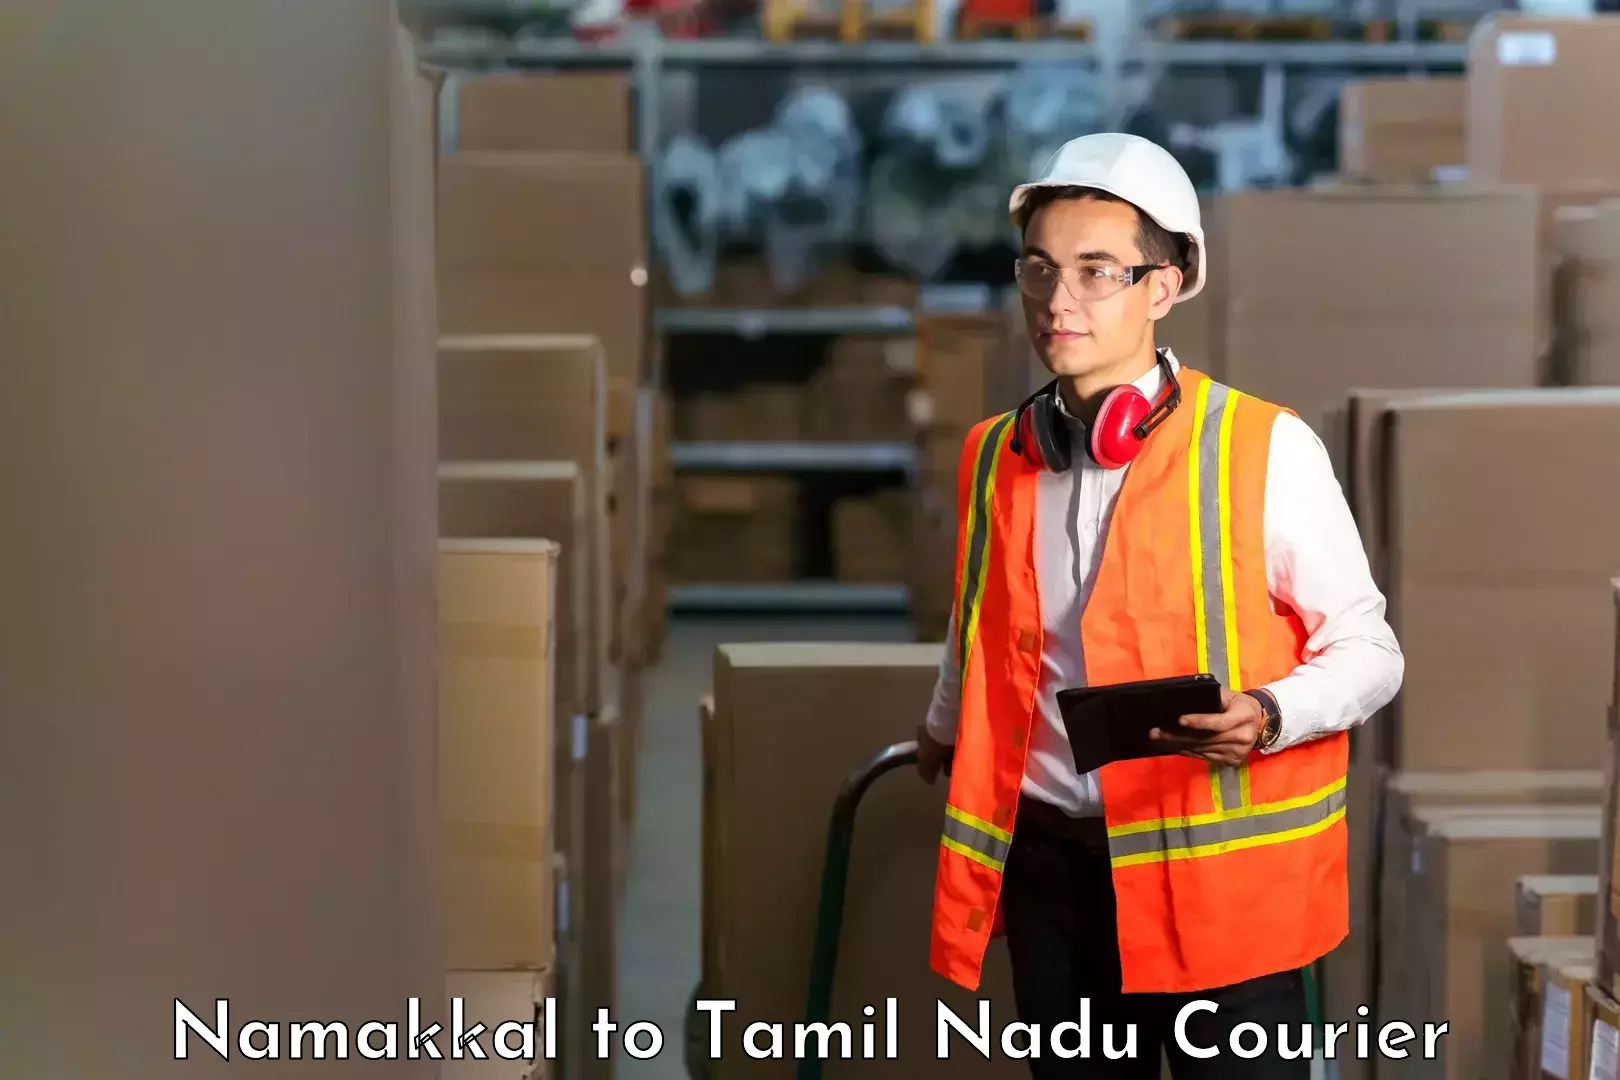 Reliable courier services Namakkal to Kotagiri